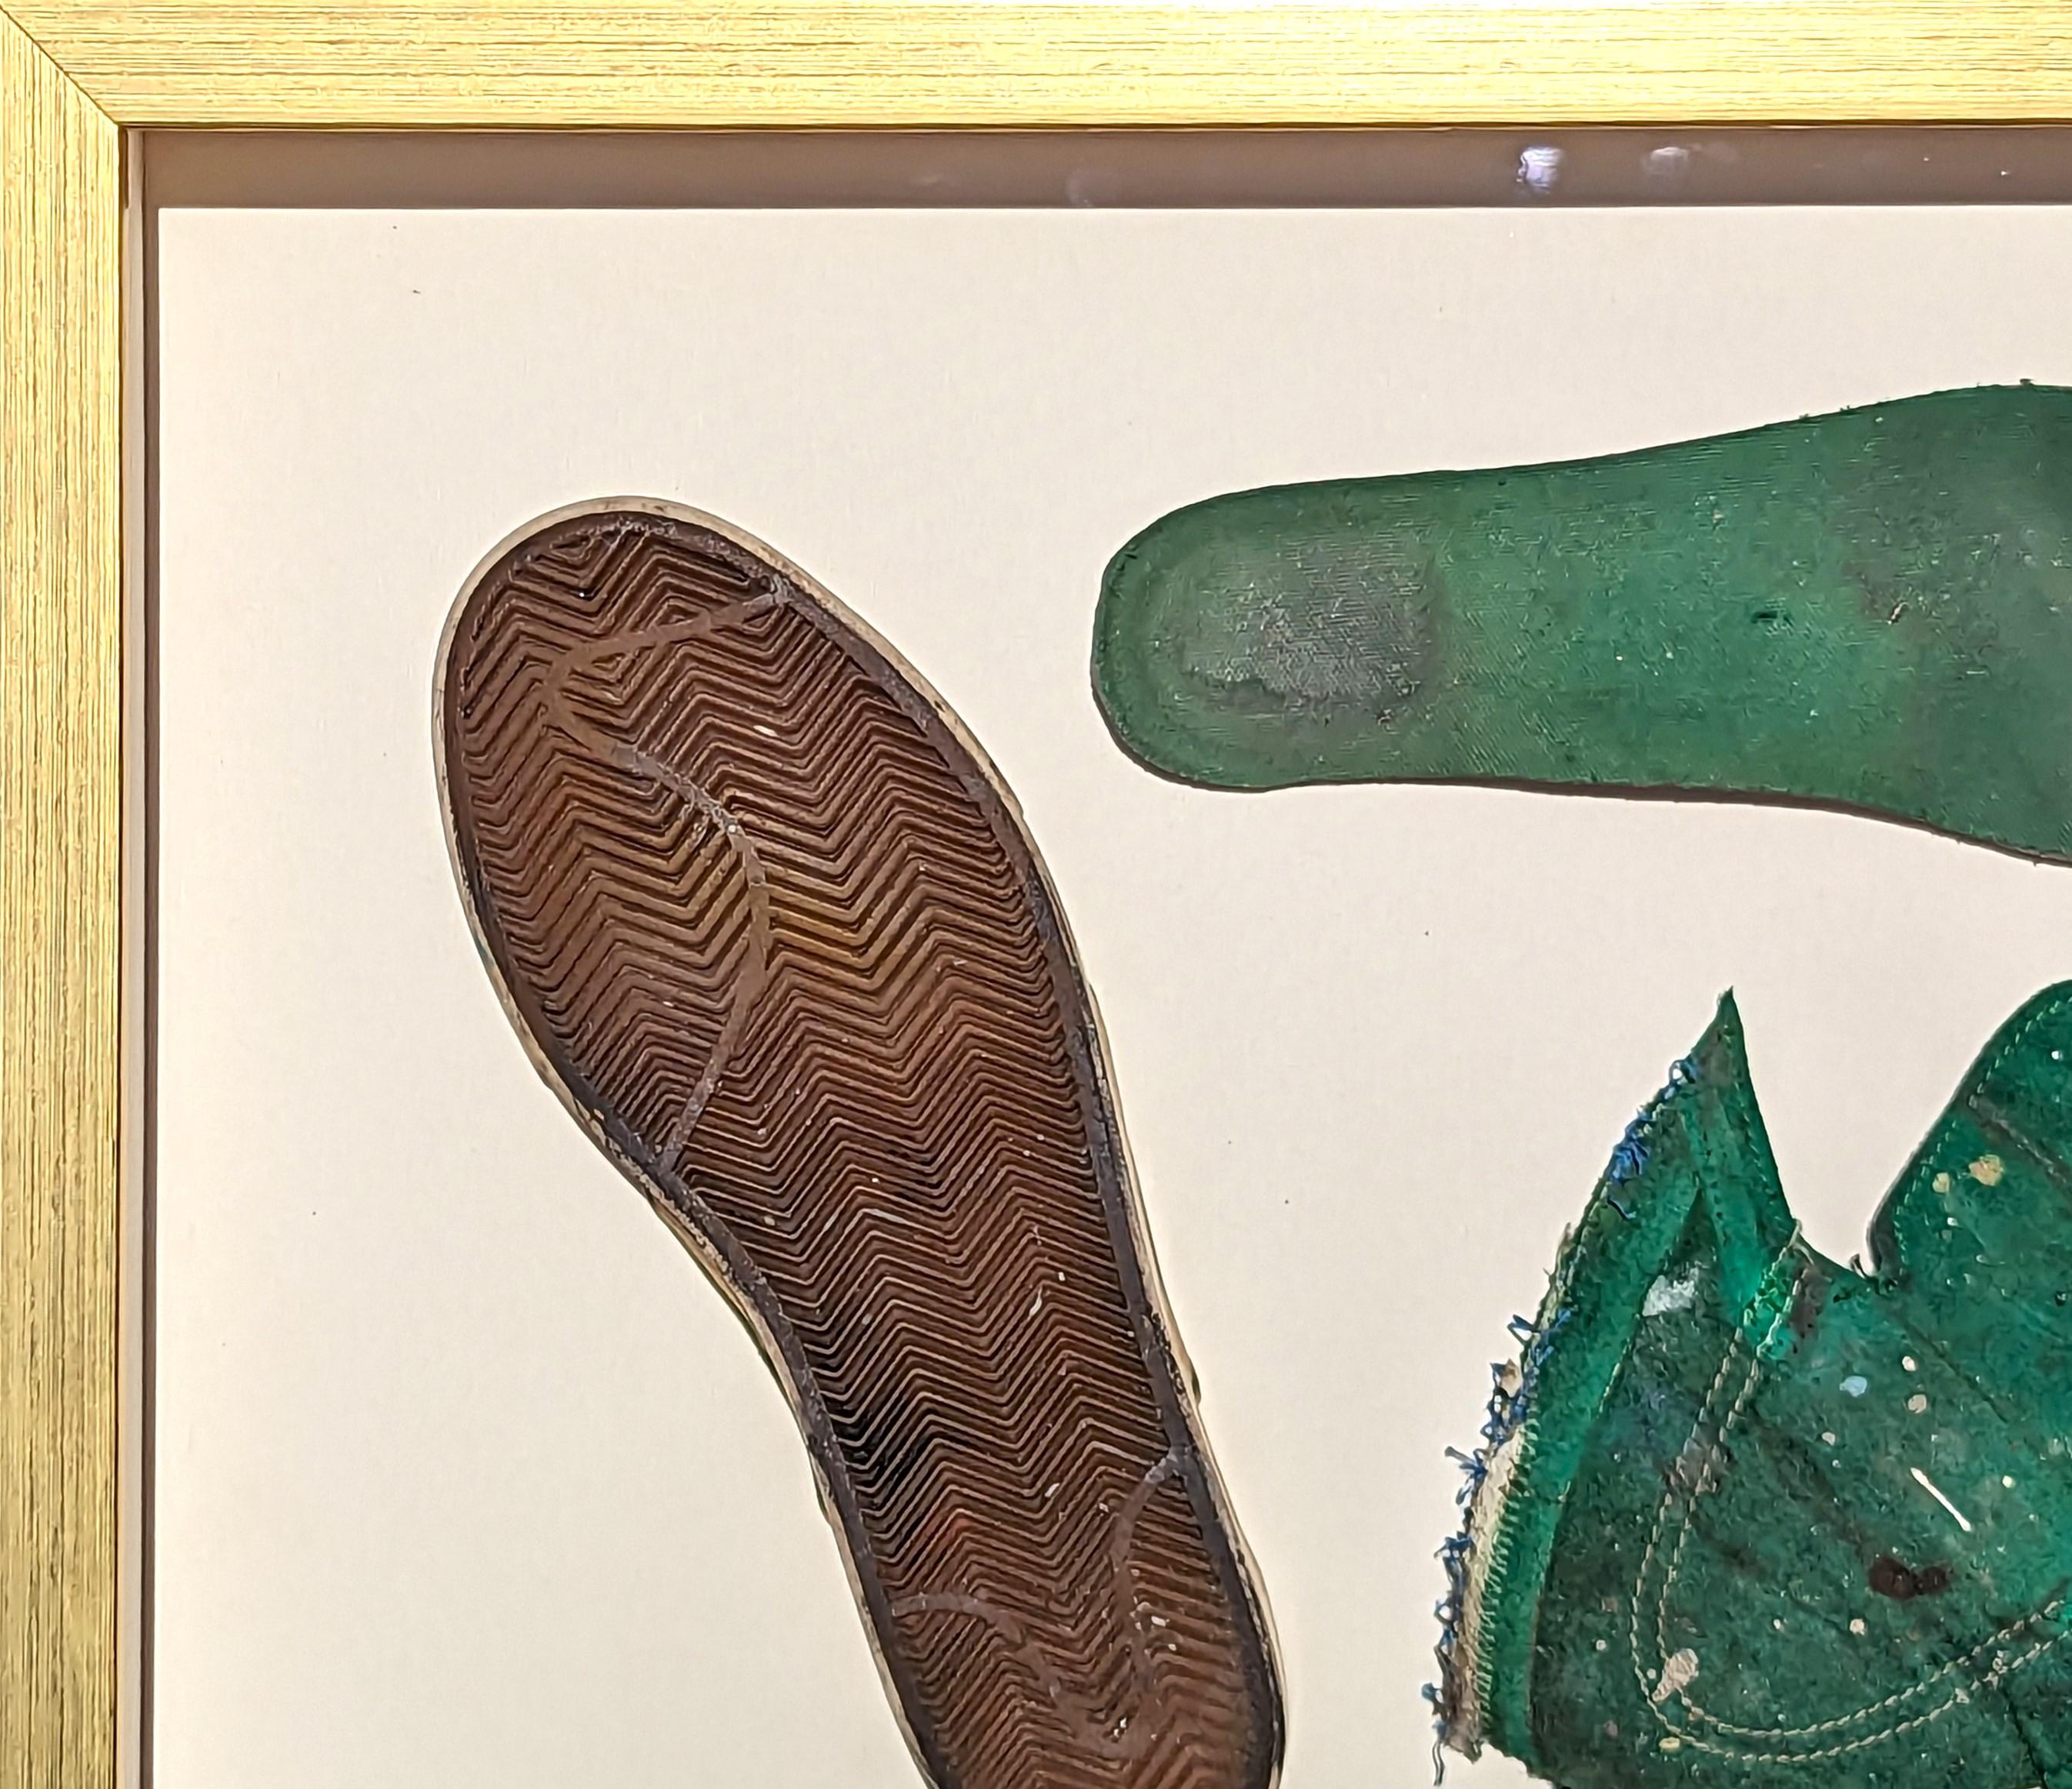 Zeitgenössische Fundstückmalerei der Künstlerin Tra' Slaughter aus Houston, TX. Das Werk zeigt einen grünen dekonstruierten Schuh, der in einem goldenen Rahmen schwebt. Diese Arbeit war Teil von Tra's Einzelausstellung 